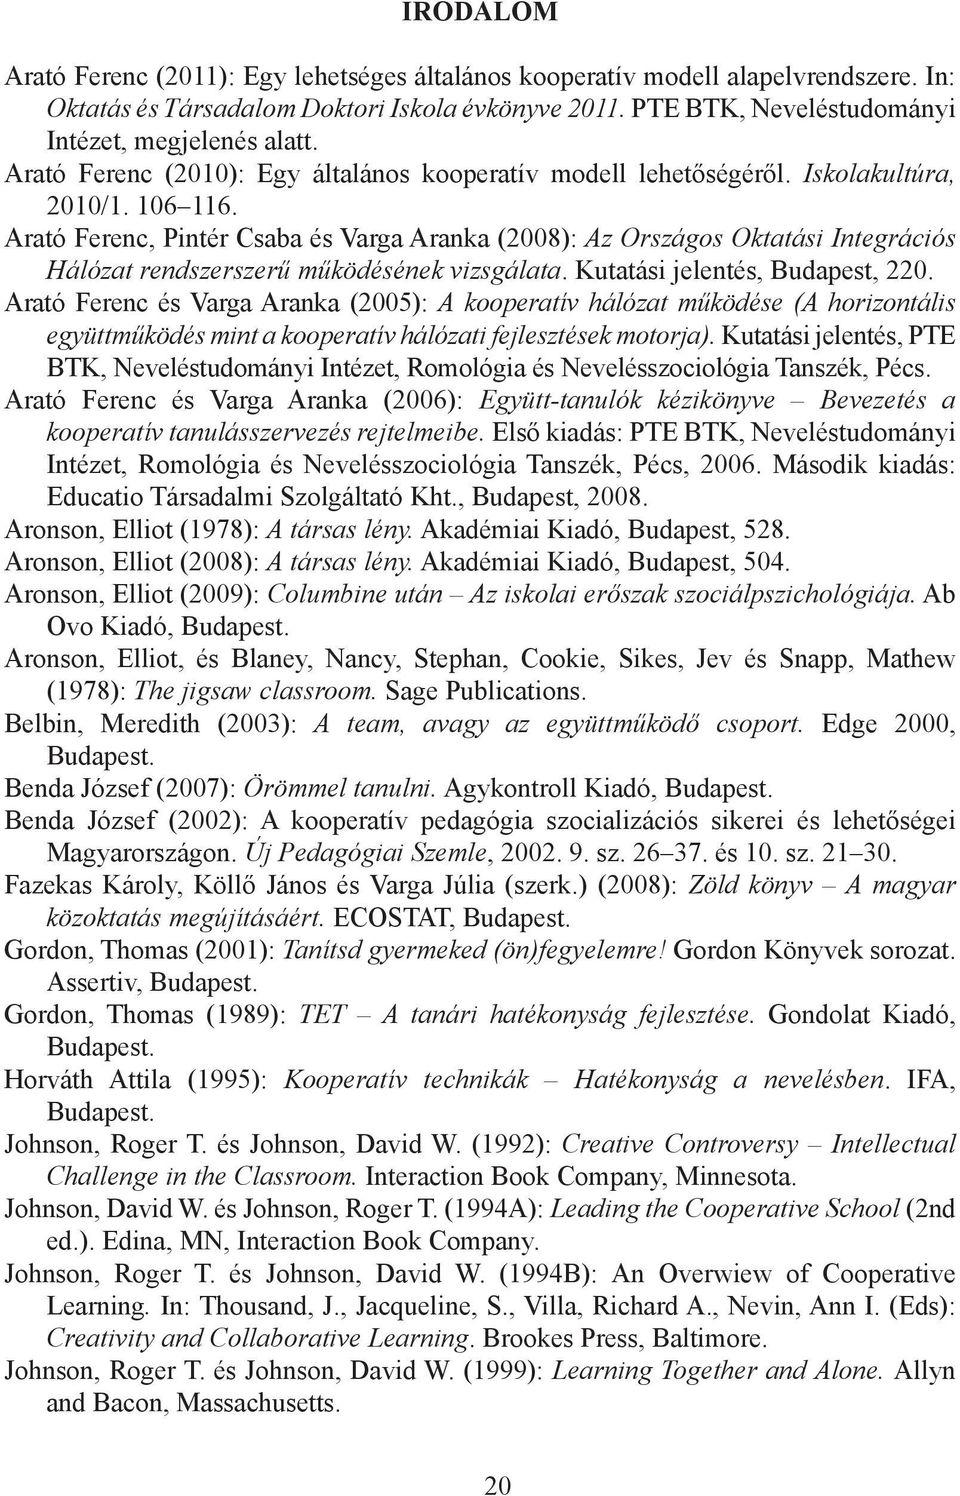 Arató Ferenc, Pintér Csaba és Varga Aranka (2008): Az Országos Oktatási Integrációs Hálózat rendszerszerű működésének vizsgálata. Kutatási jelentés, Budapest, 220.